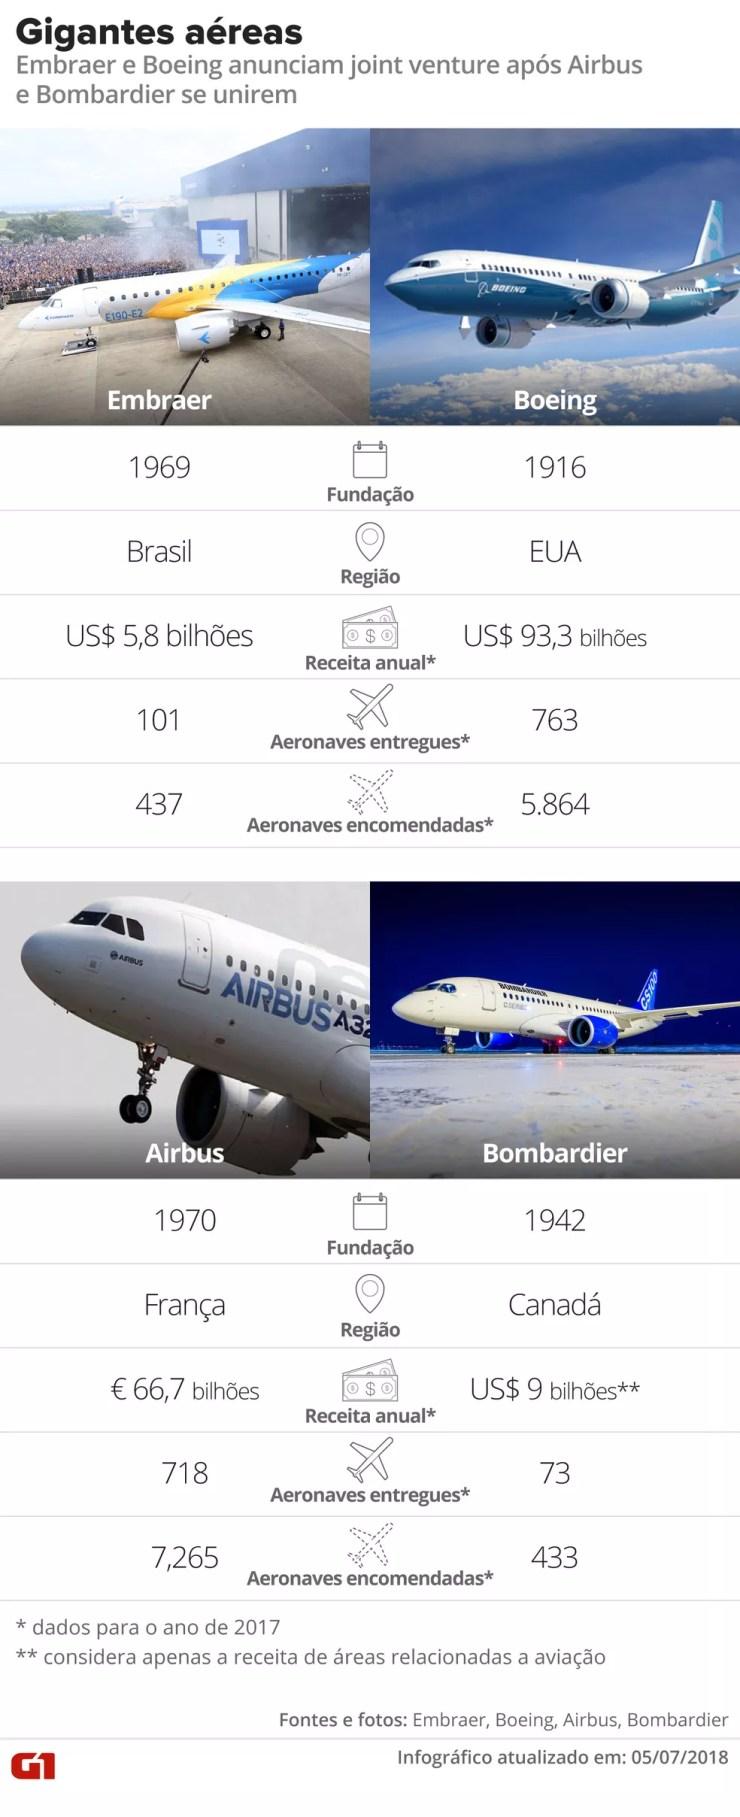 Situação das gigantes aéreas Embraer, Boeing, Airbus e Bombardier  — Foto: Alexandre Mauro/G1